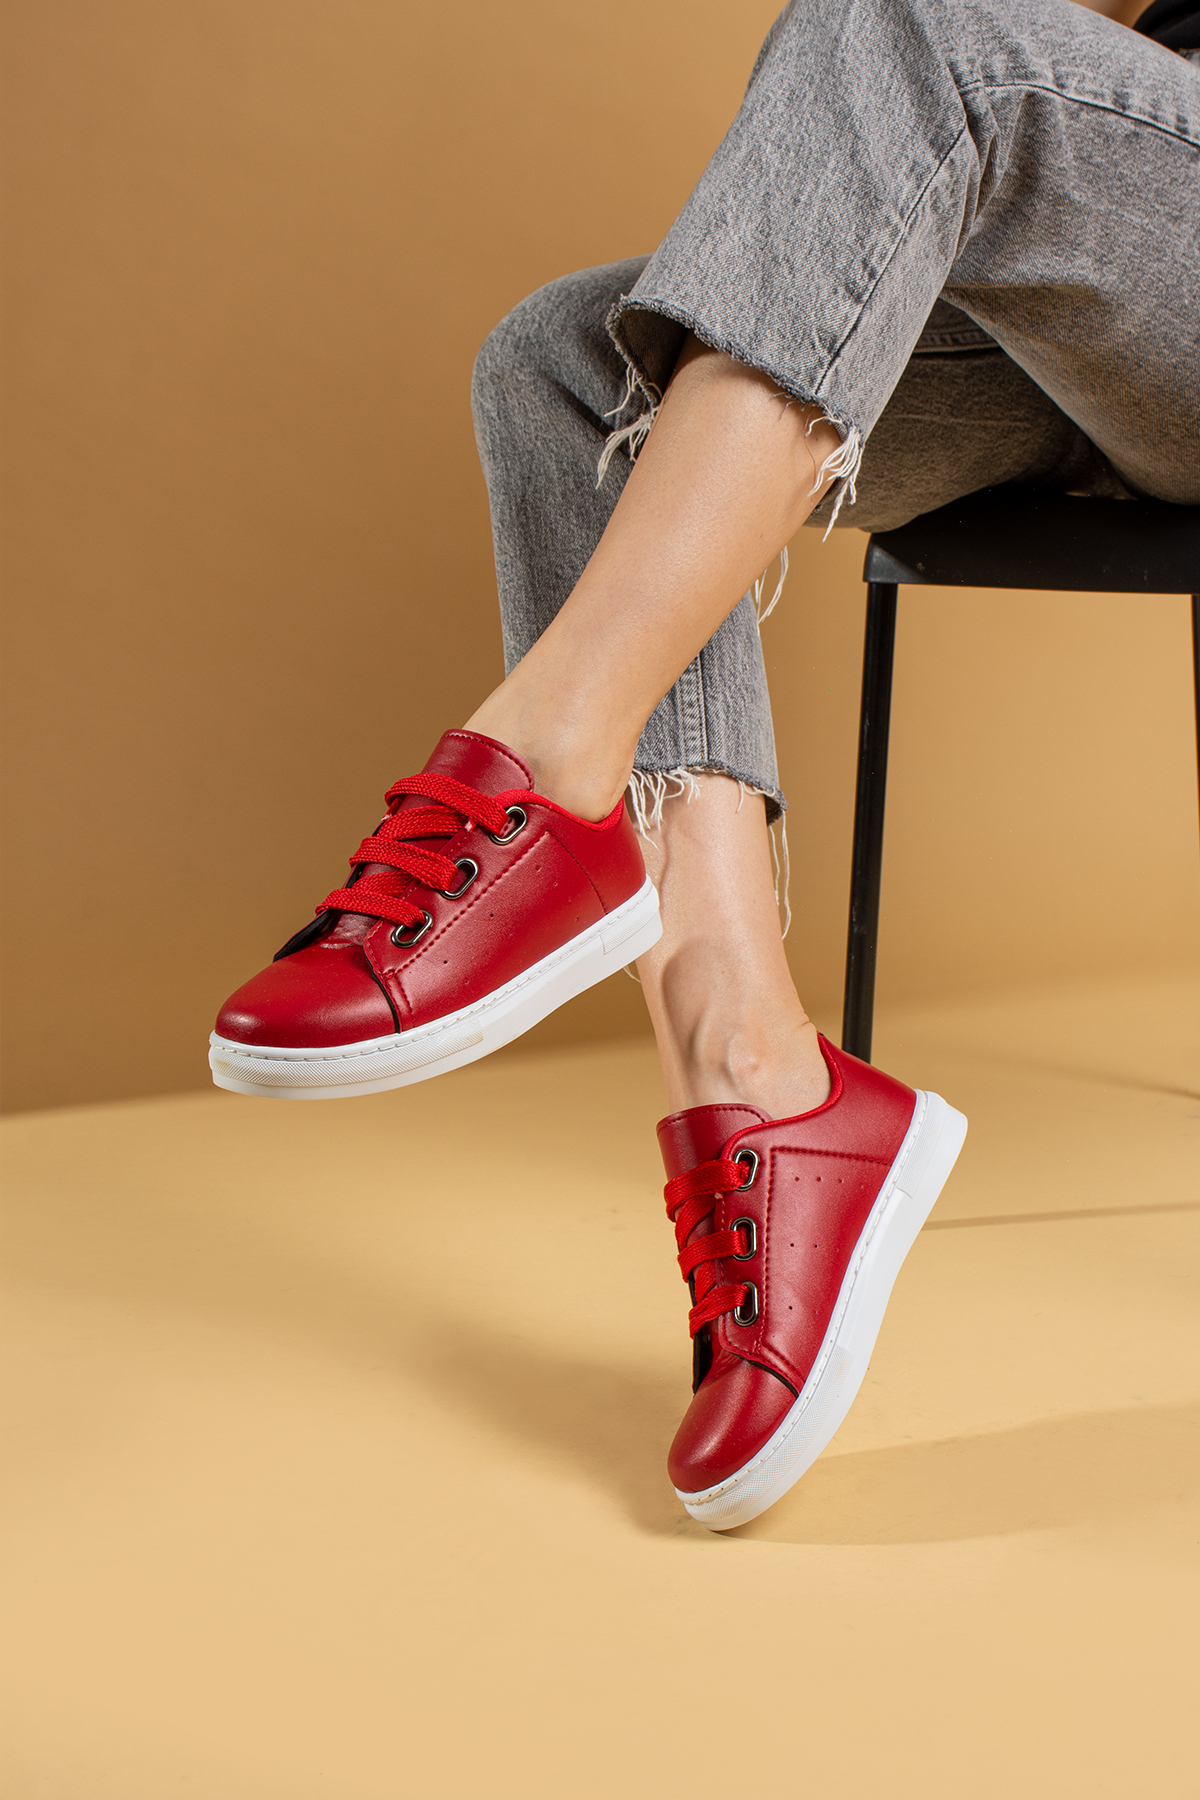 Pembe Potin Rahat Kalıp Moda Kadın Günlük Sneaker J320-22 - Kırmızı